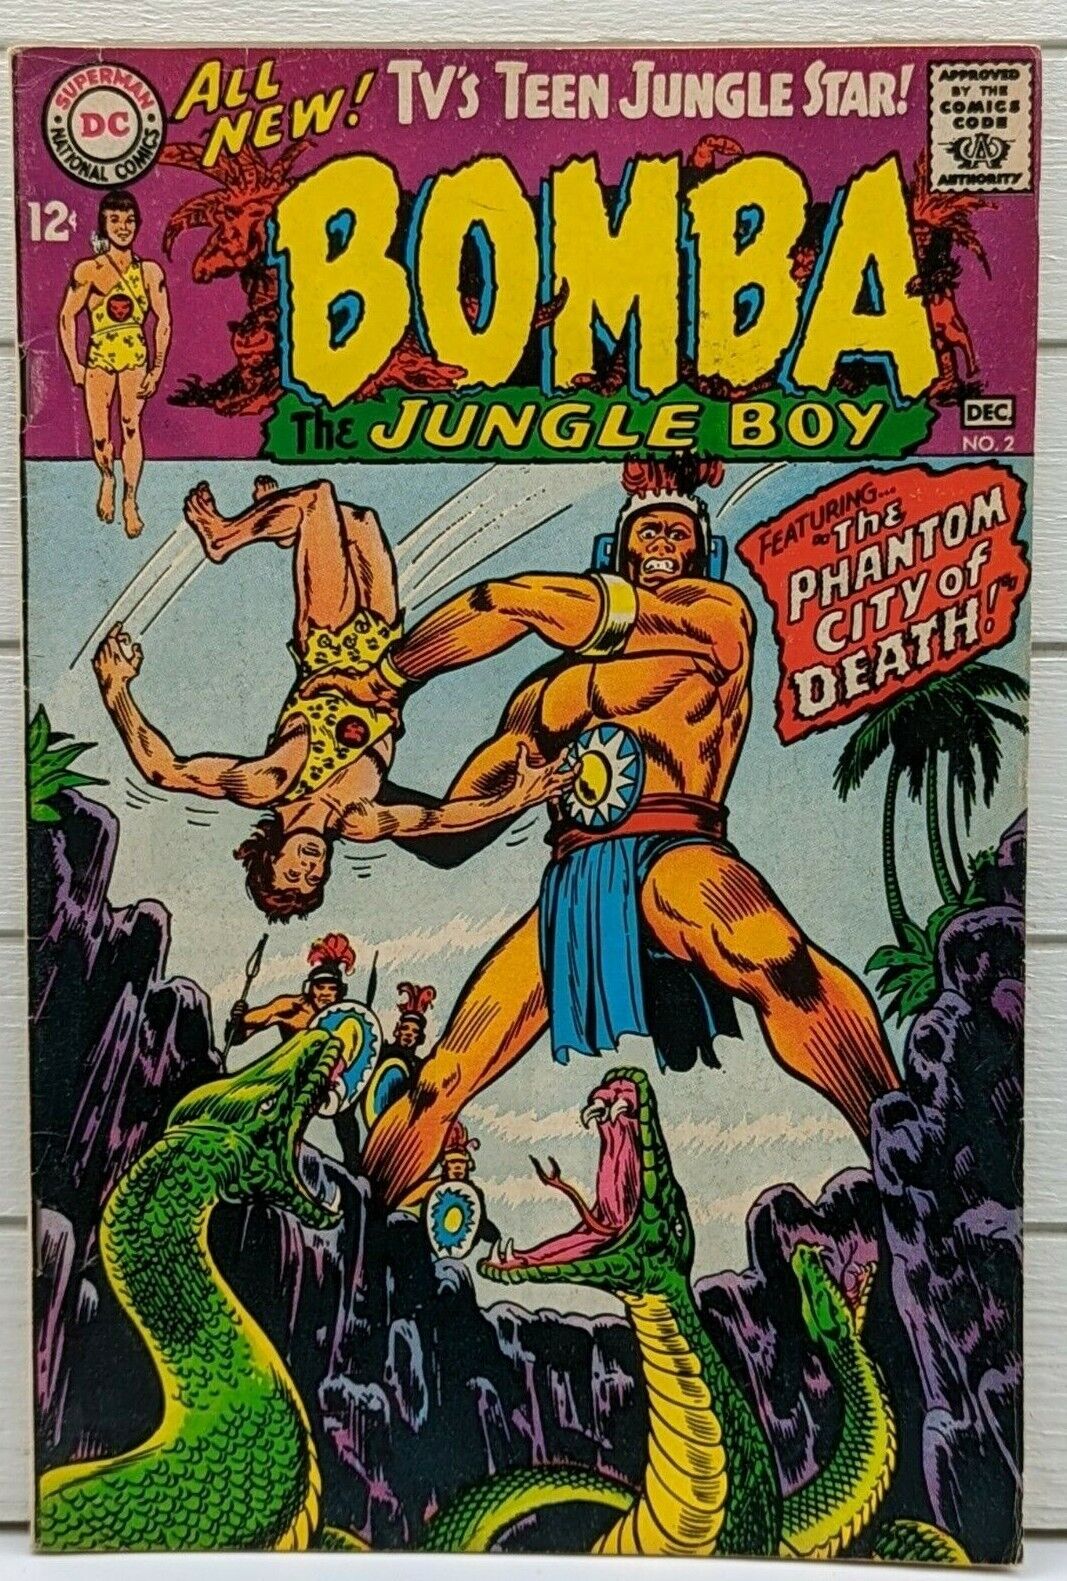 Bomba The Jungle Boy #2 7.5 VF Very Fine Silver Age Comic 1967 DC Comics 12 Cent